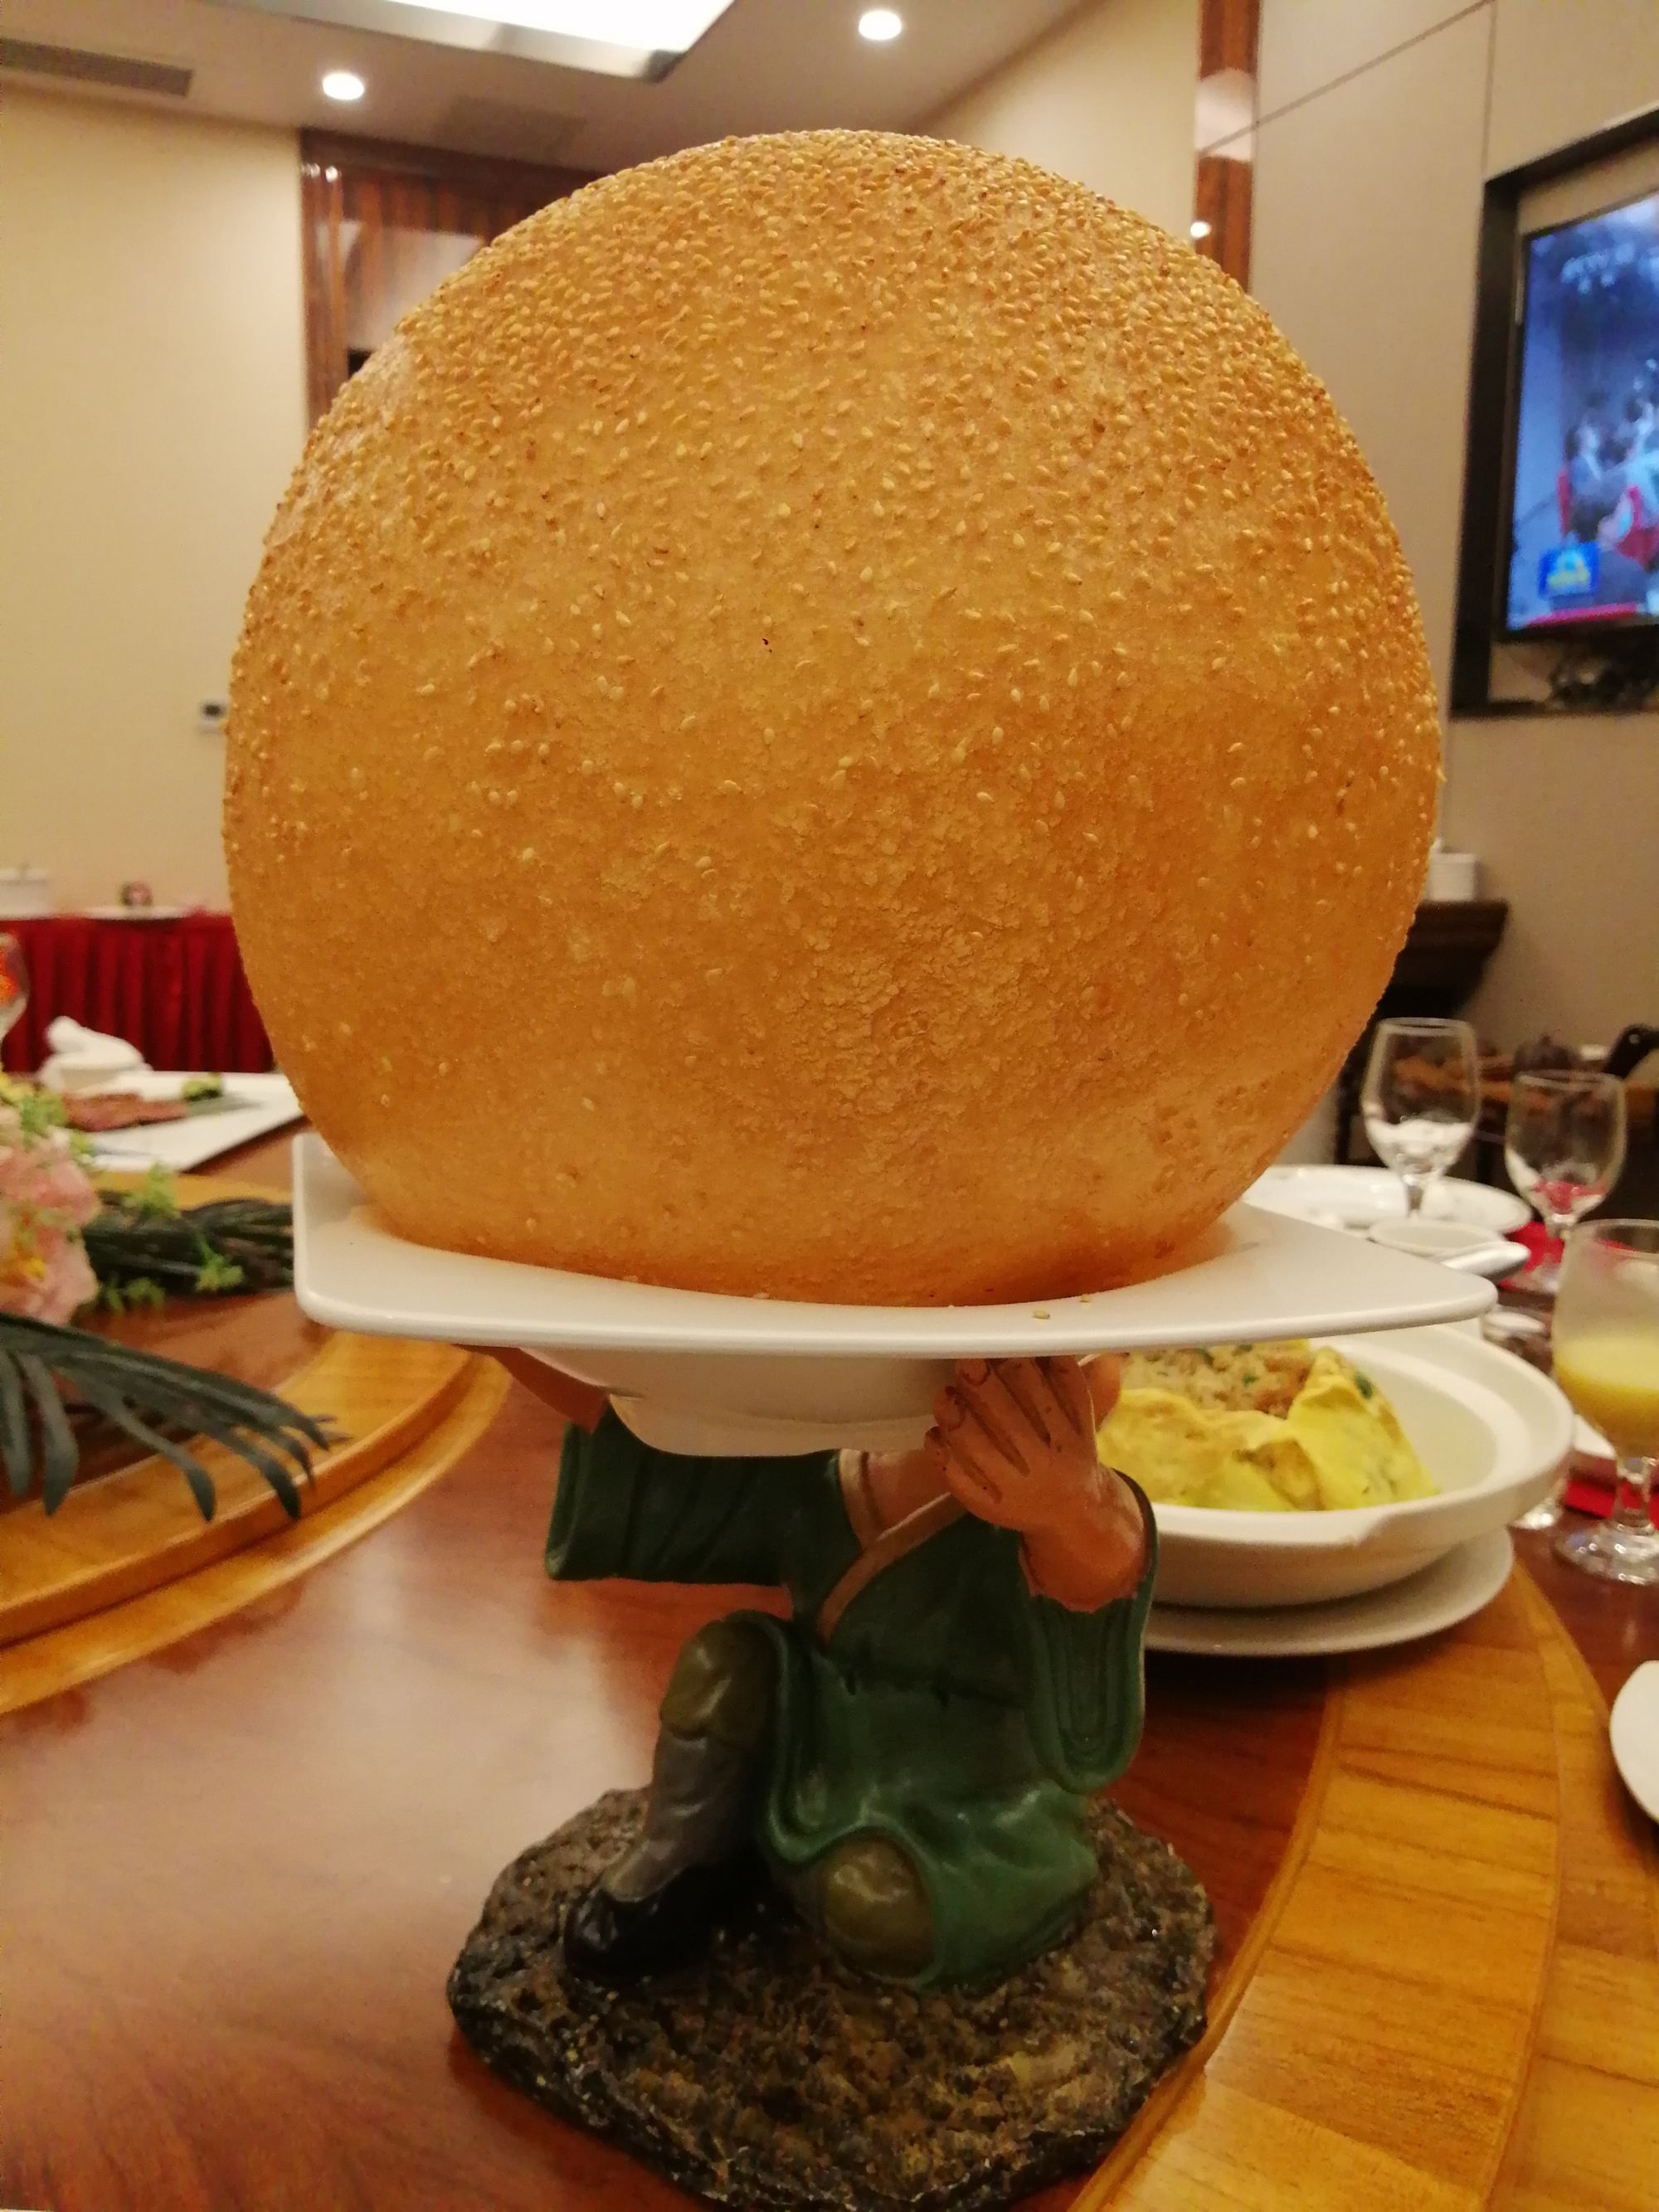 这个跟足球一样大的球,好吃哦,是南宁港粤轩的鸿运大煎堆